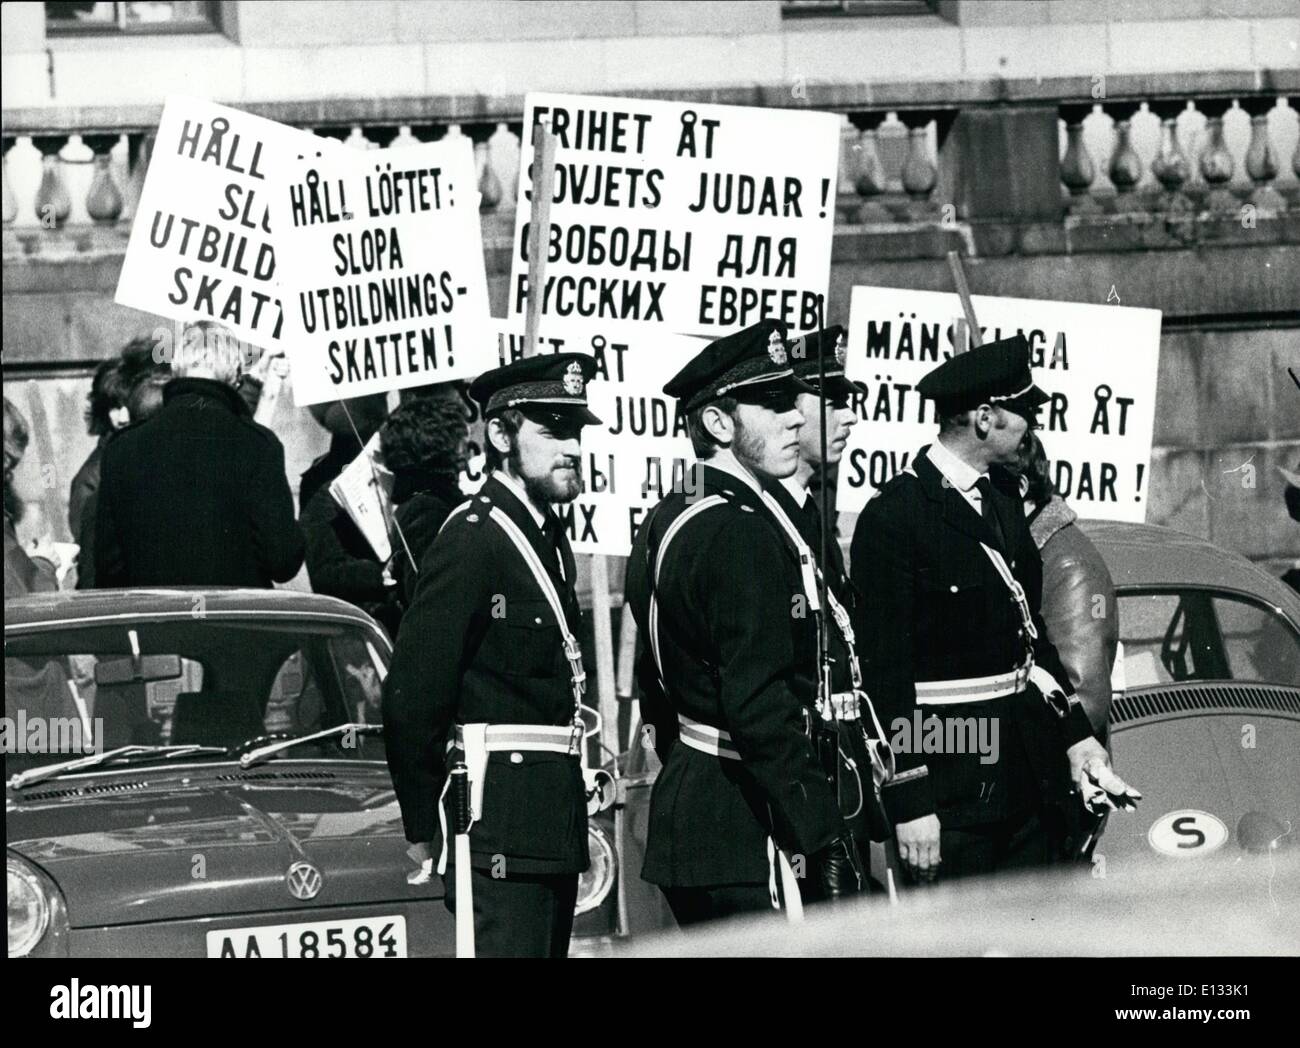 Febbraio 26, 2012 - un piccolo gruppo di ebrei sono stati la dimostrazione contro la discriminazione sovietica degli ebrei che vivono in unione sovietica. ''La libertà per ebrei sovietici'', ''i diritti umani per ebrei sovietici'', entrambi in svedese e in russo sulla segnaletica. Foto Stock